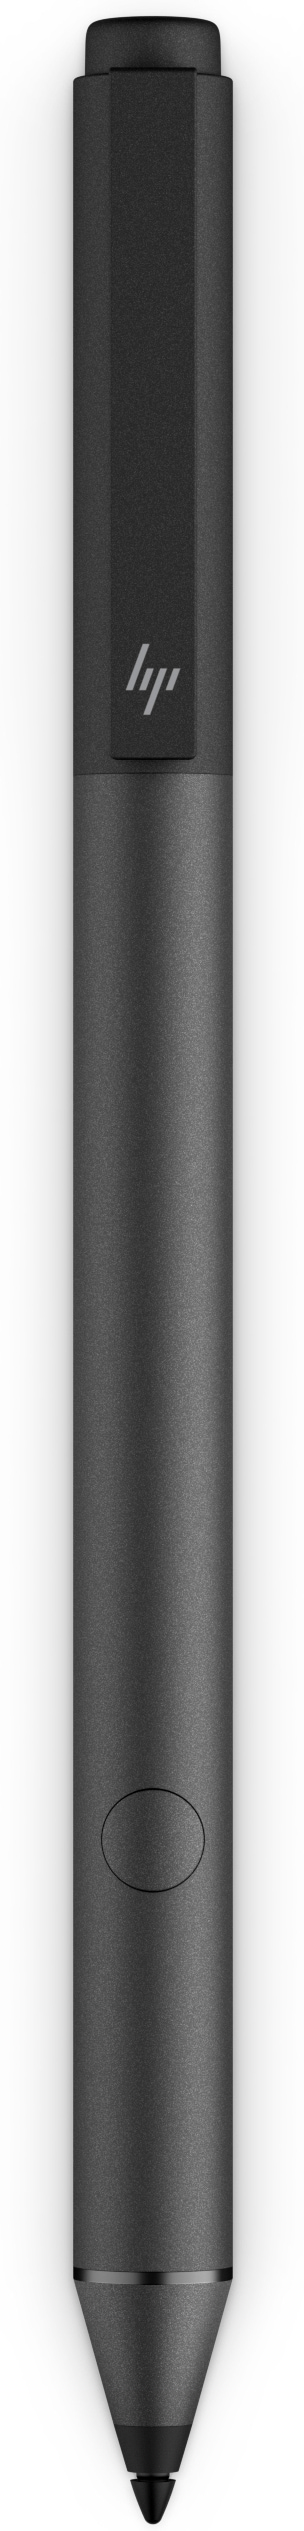 HP Tilt - Digitaler Stift - dunkel aschgrau silberfarben